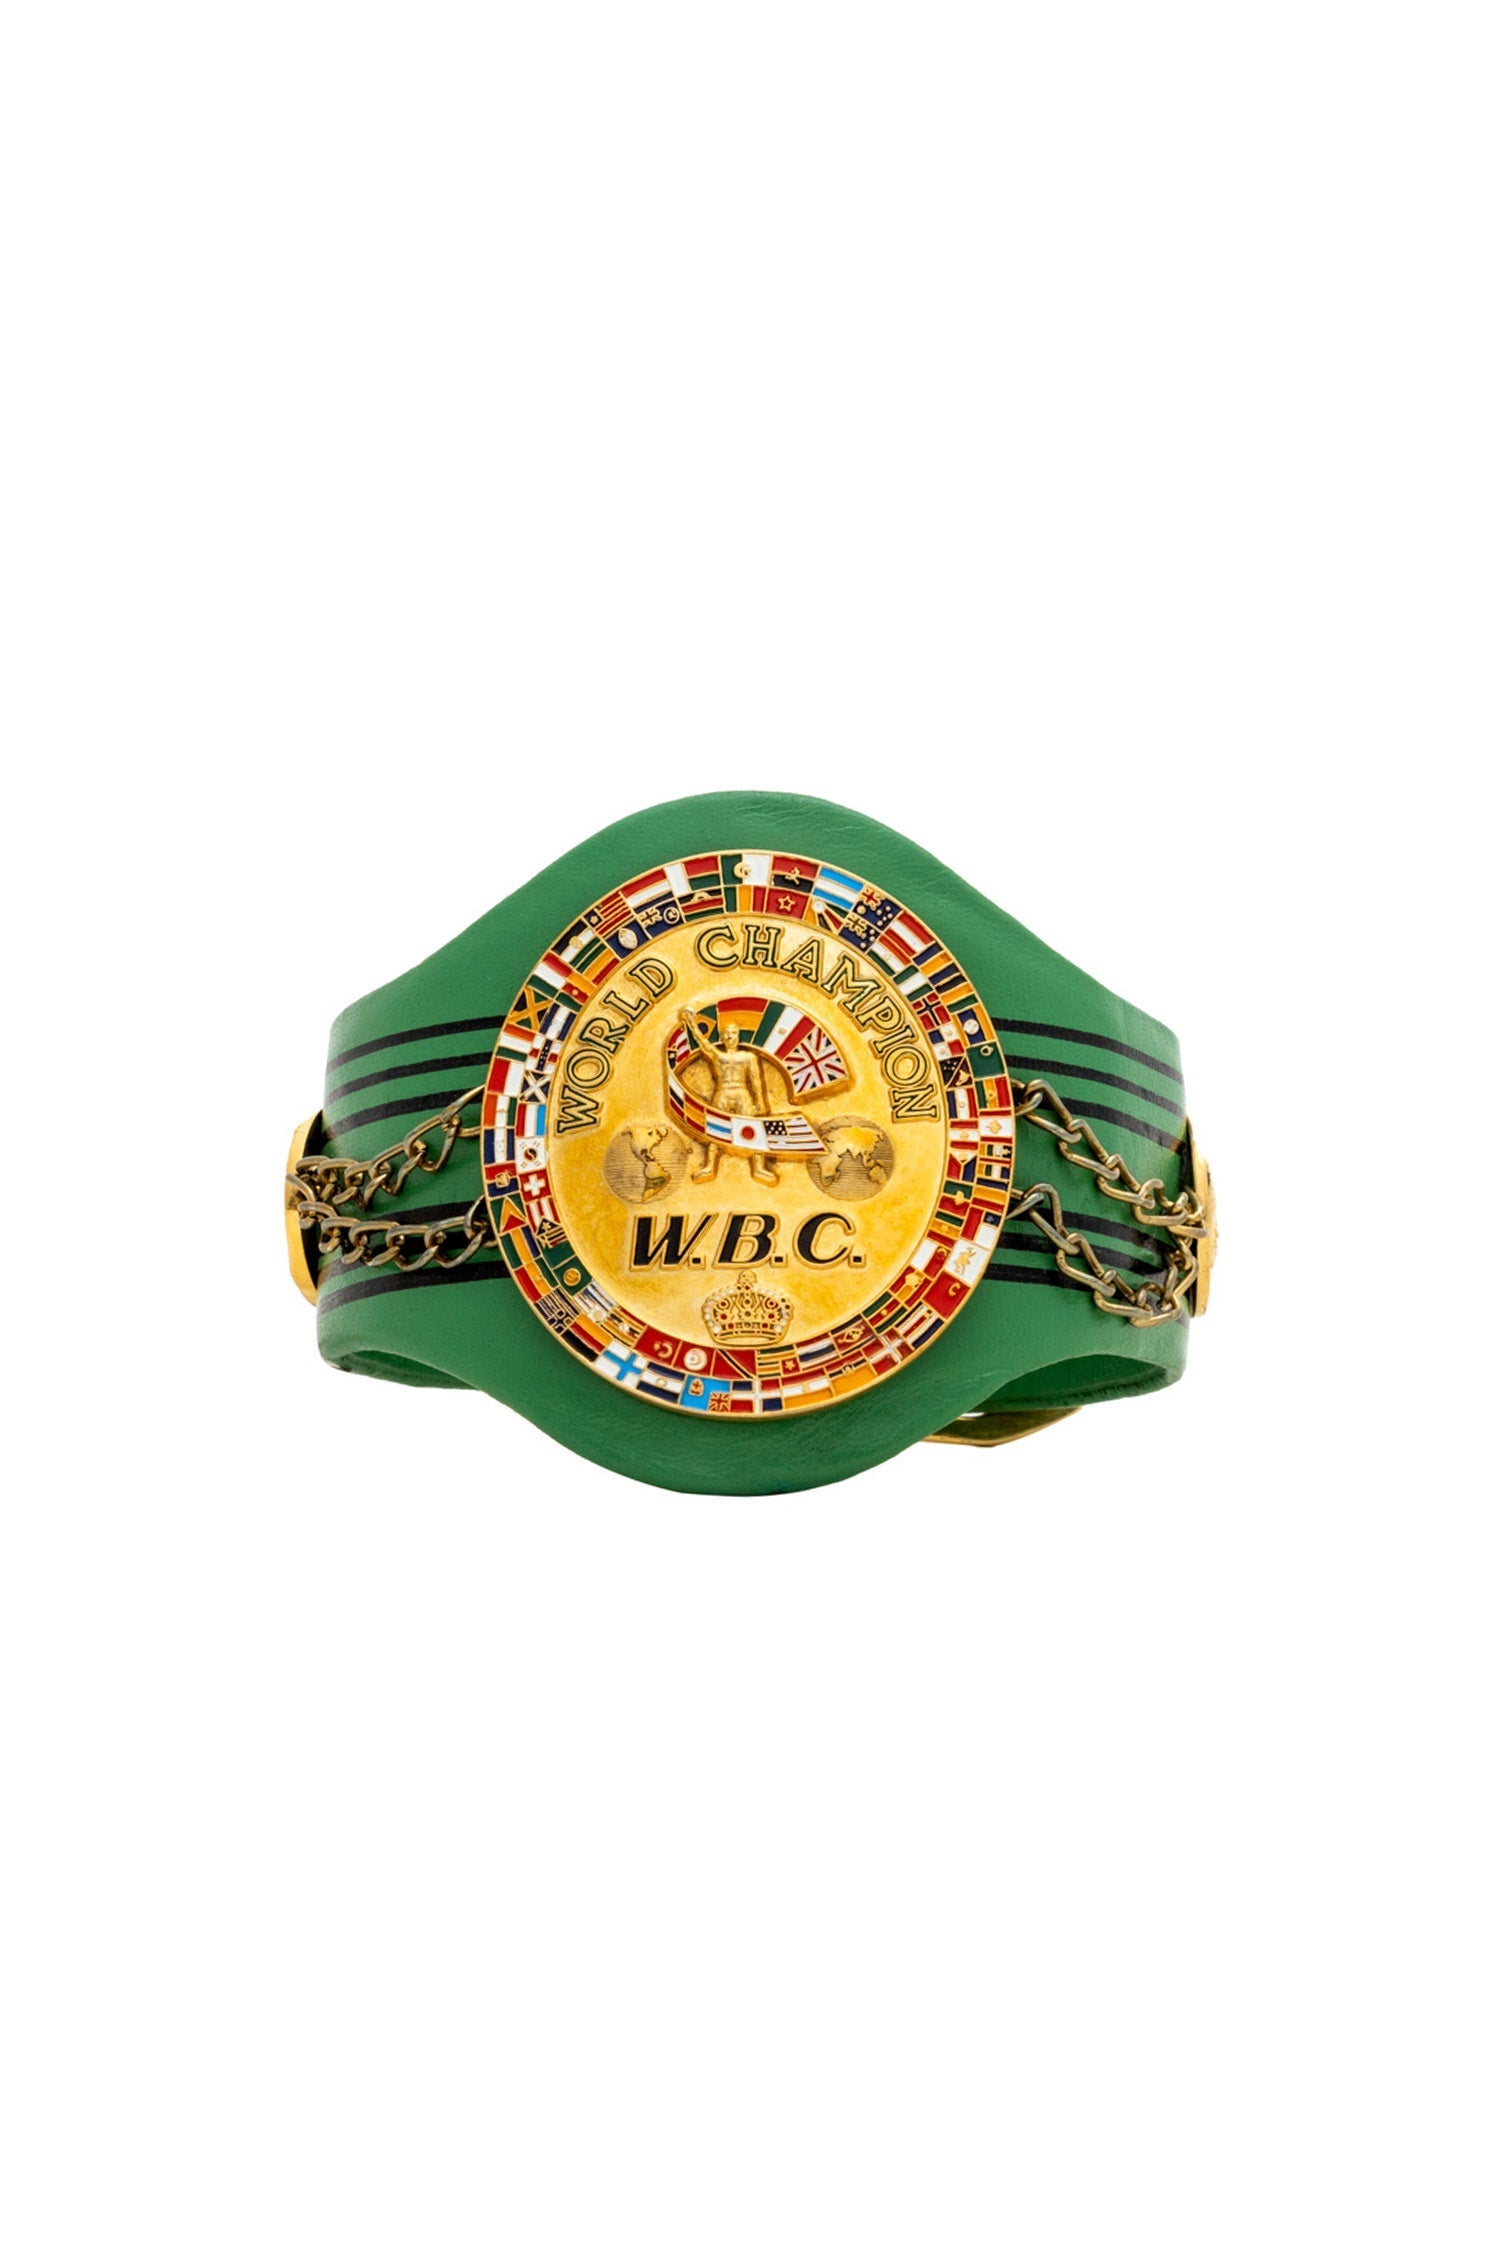 WBC Store WBC - Micro Belt Third Generation